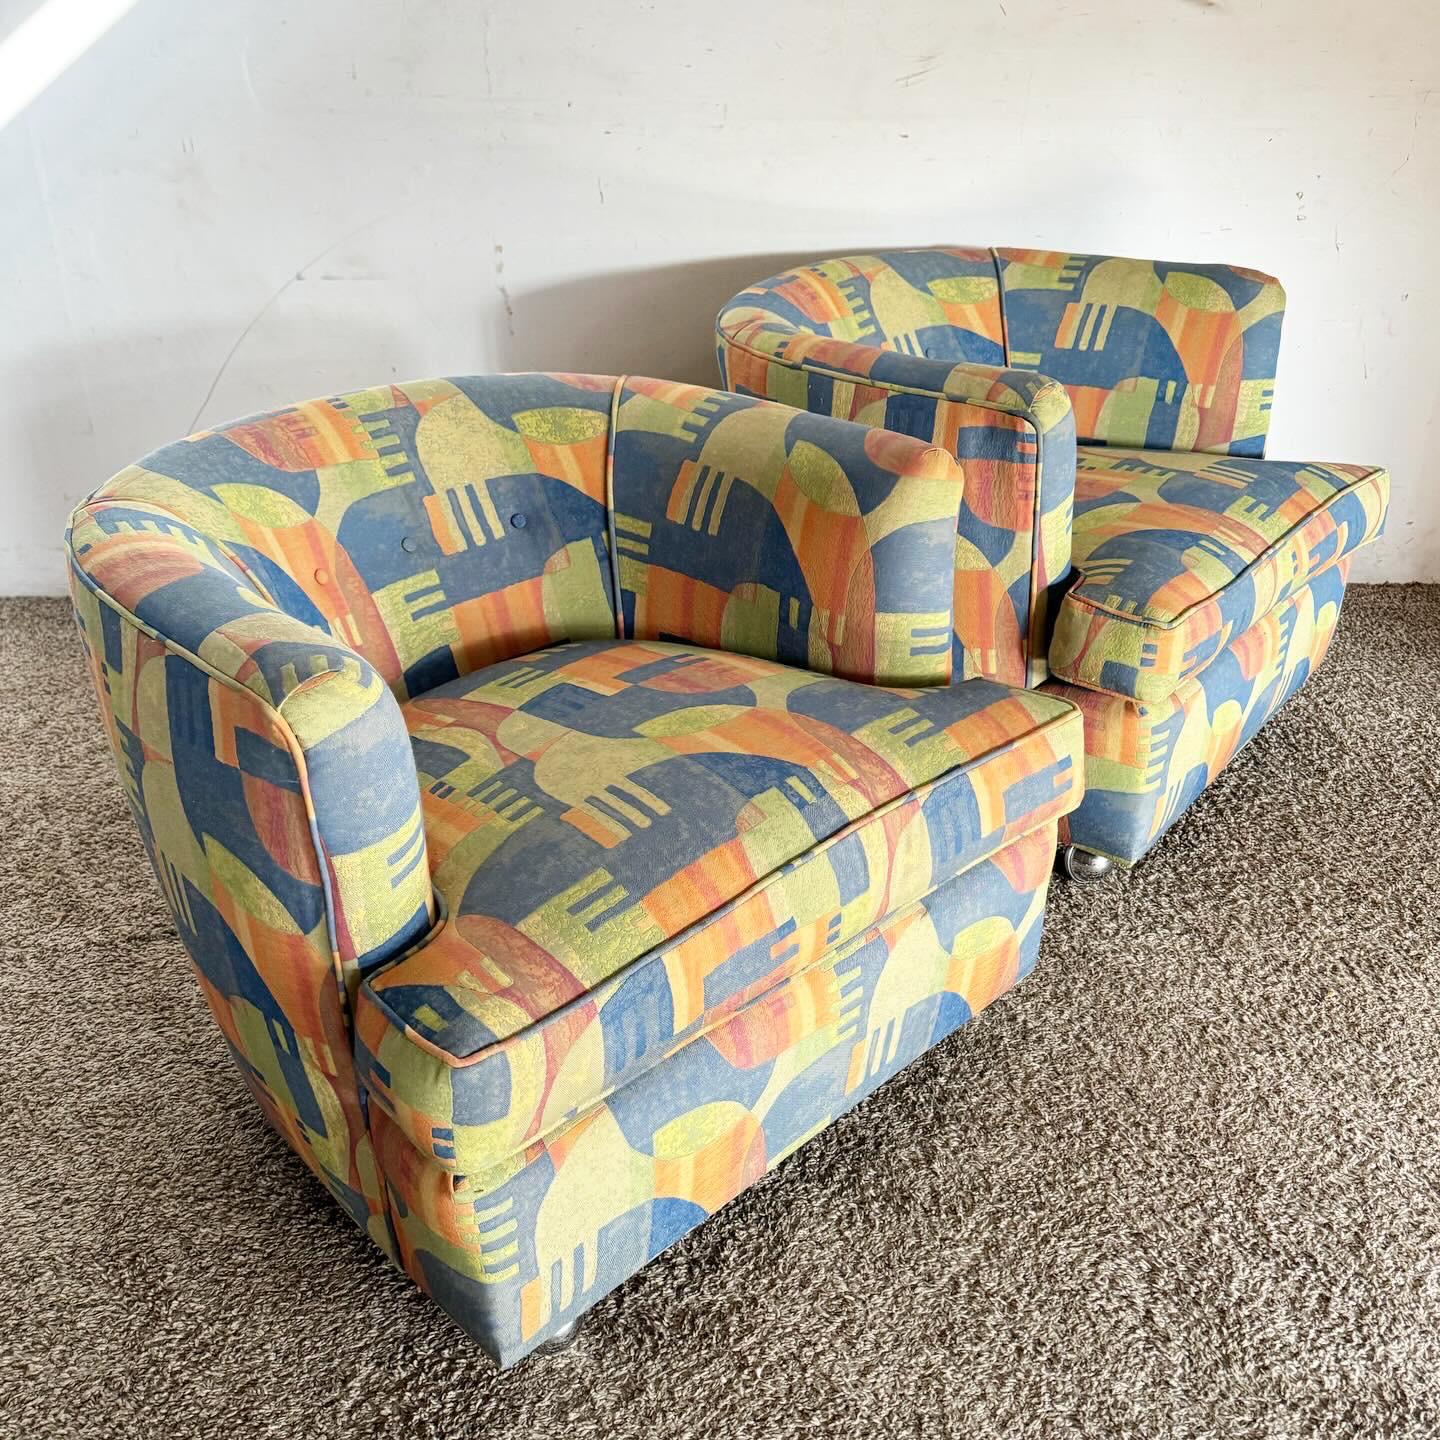 Bringen Sie Schwung in Ihren Raum mit diesen postmodernen mehrfarbigen Barrel Chairs auf Chromrollen. Mit ihrer lebendigen, mehrfarbigen Polsterung und dem bequemen Tonnen-Design sind diese Stühle perfekt für jedes moderne Ambiente. Die verchromten